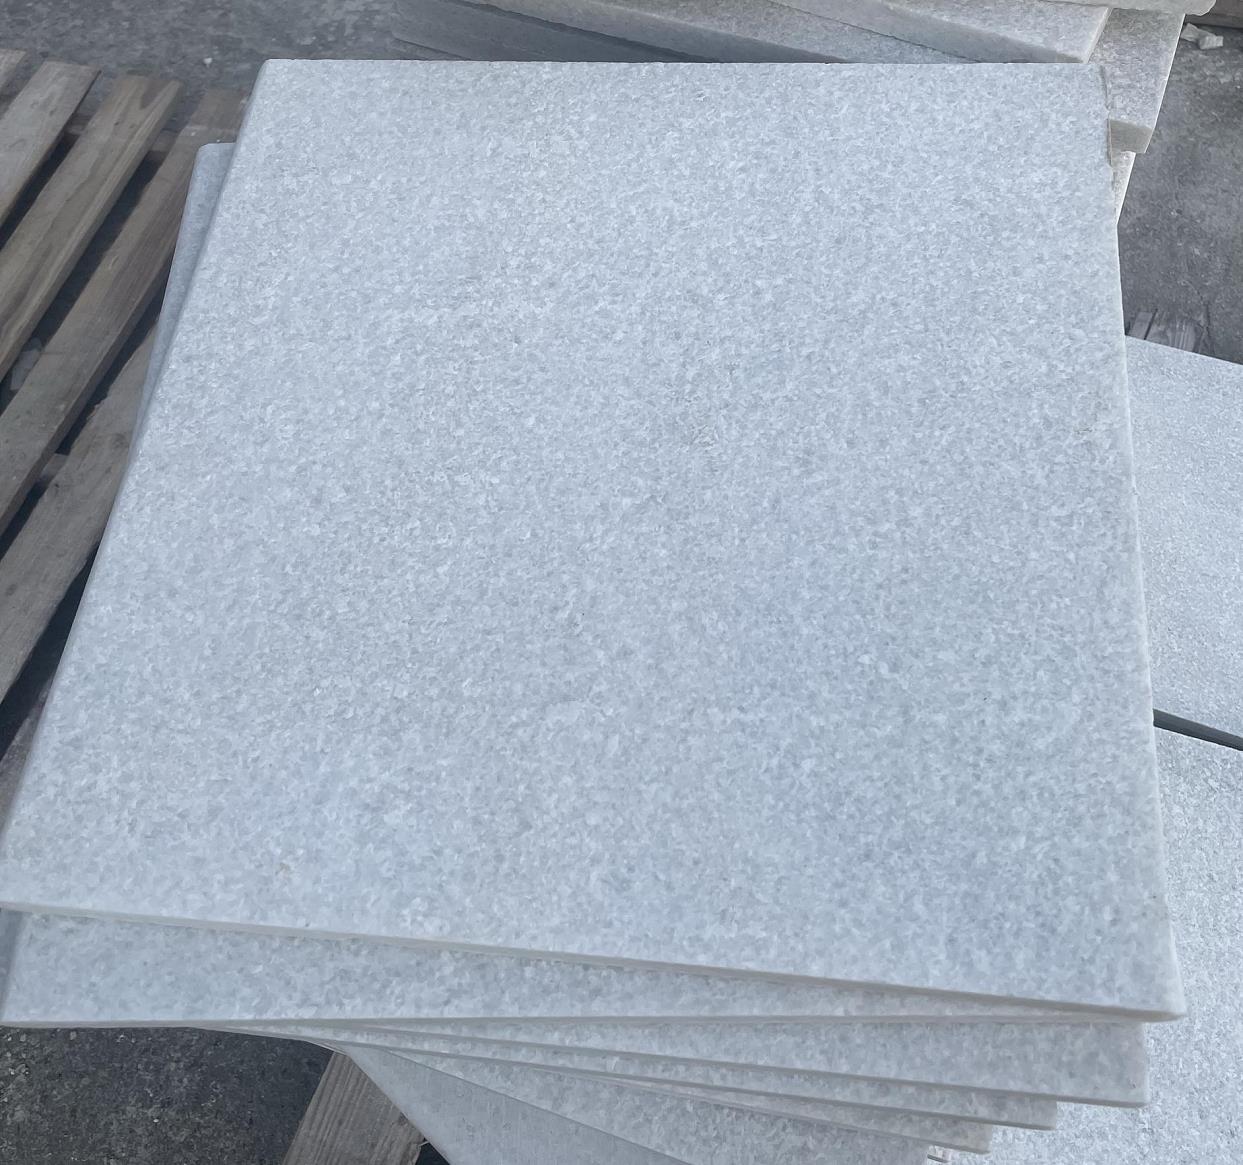 White quartzite stone tiles for patio pavers